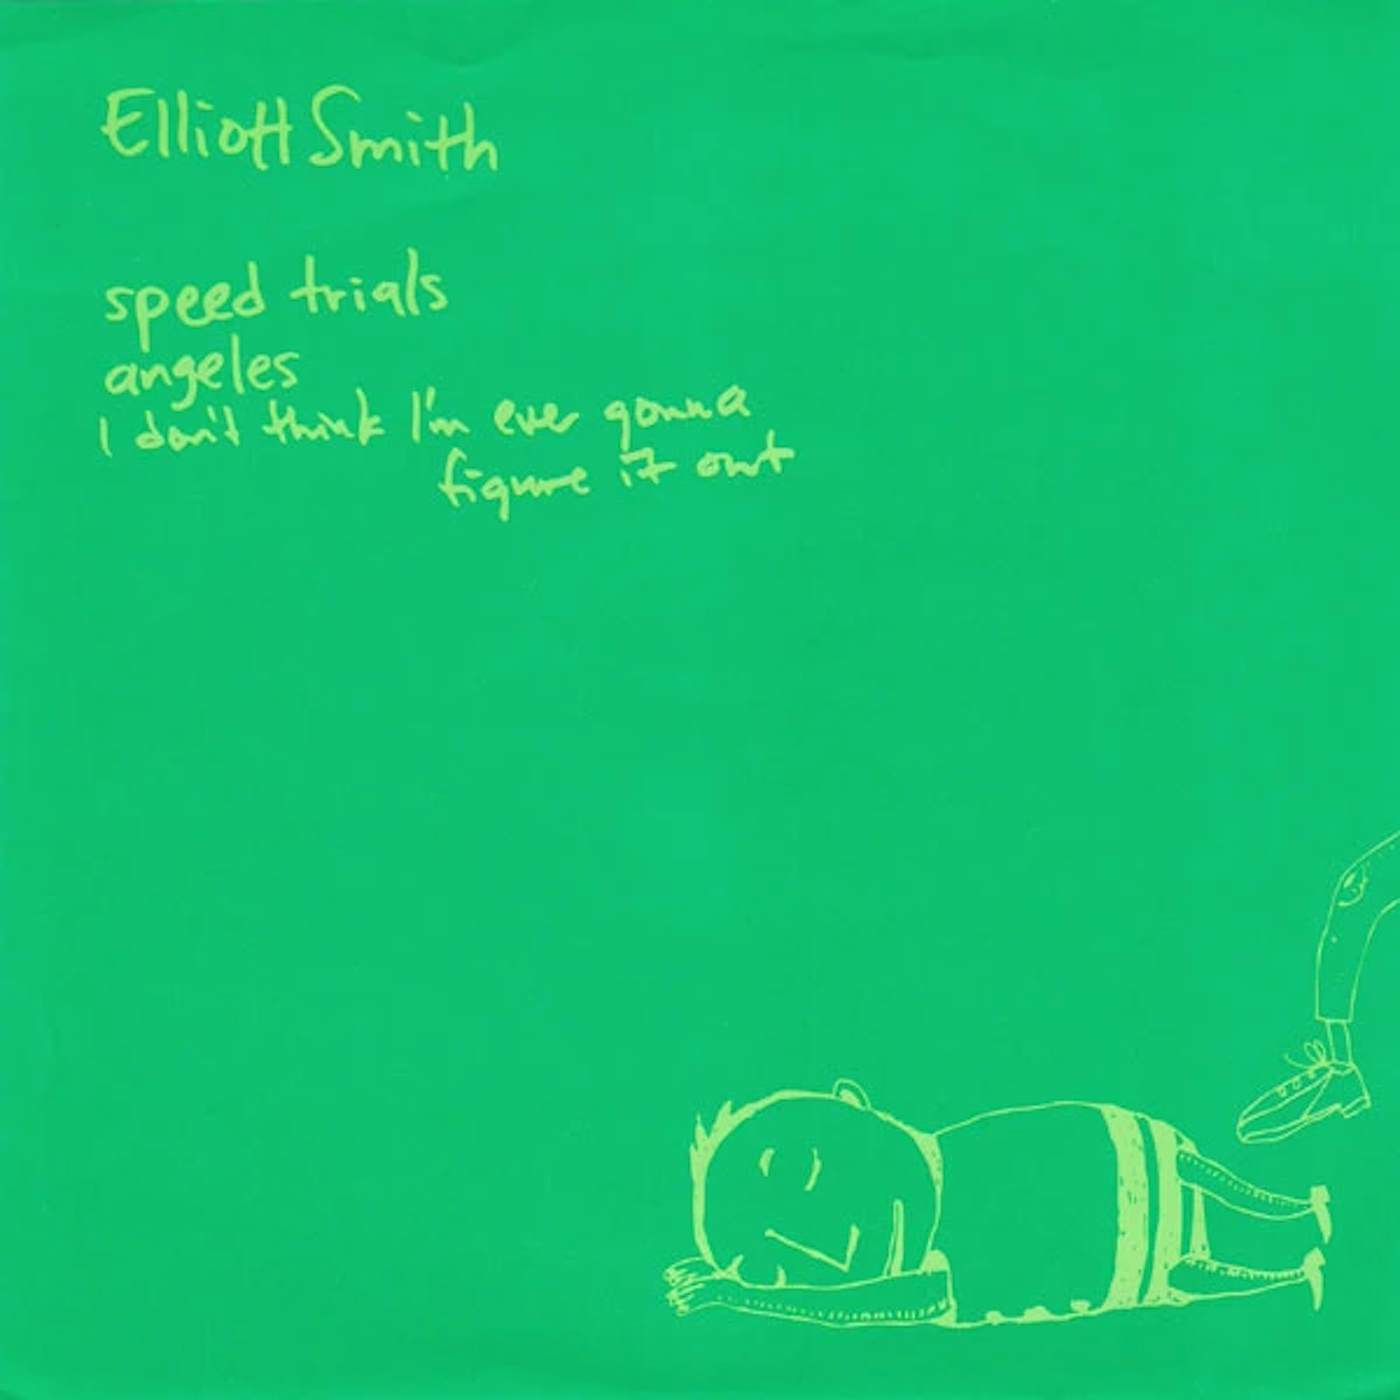 Elliott Smith Speed Trials Vinyl Record